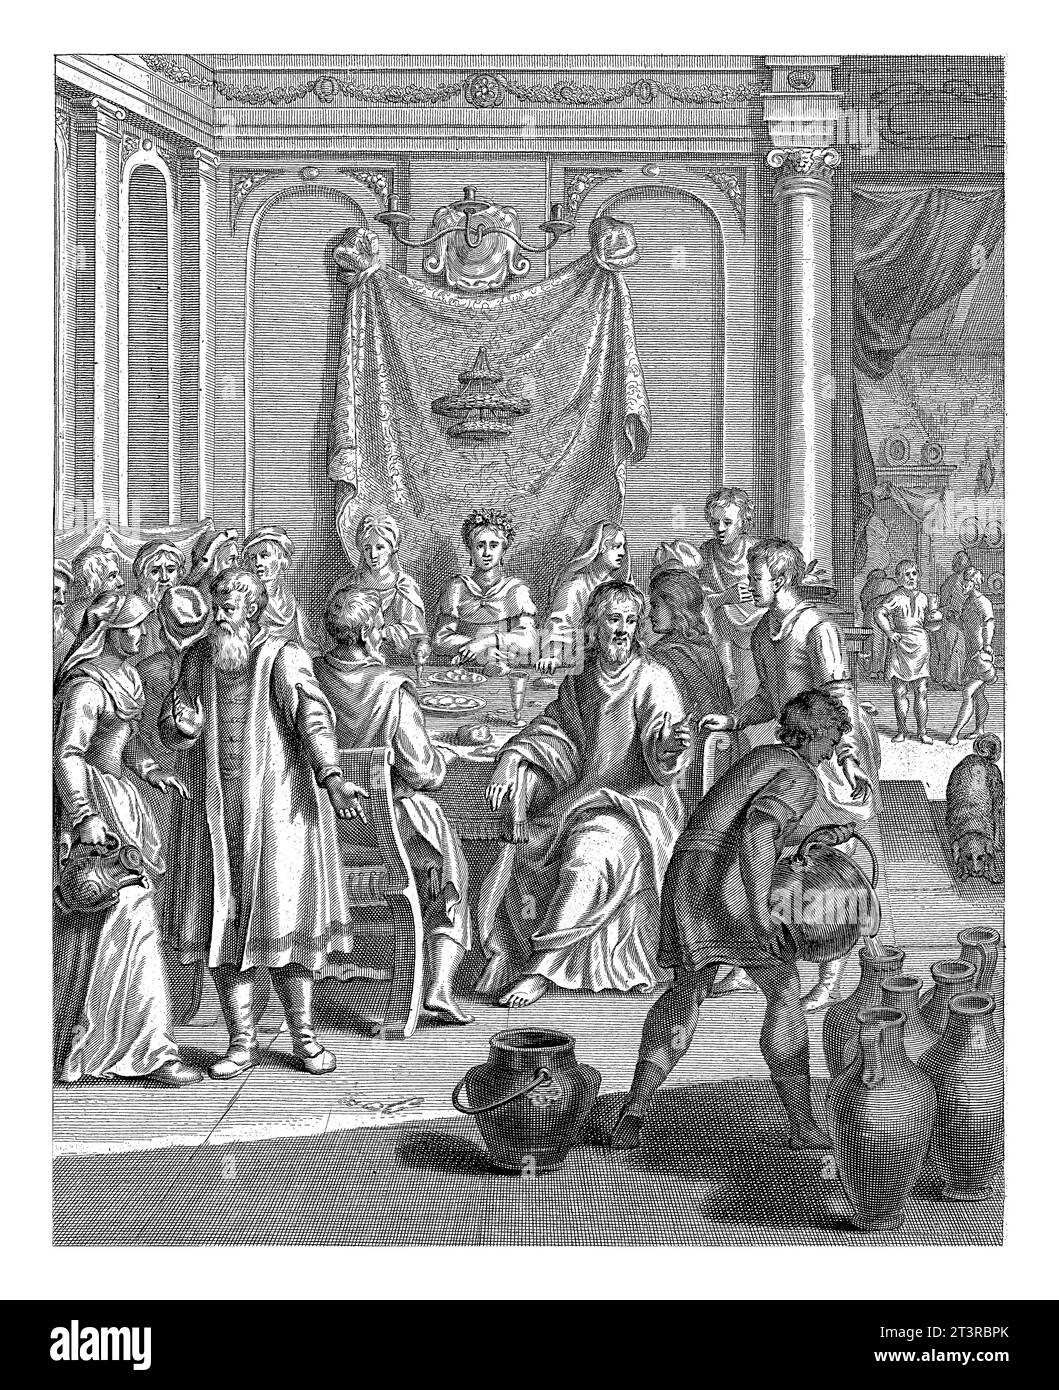 Mariage à Cana, Christiaan Hagen, 1670 - 1672 Christ, assis à une table pendant le mariage à Cana, donne l'ordre de remplir les pots avec de l'eau, qui h Banque D'Images